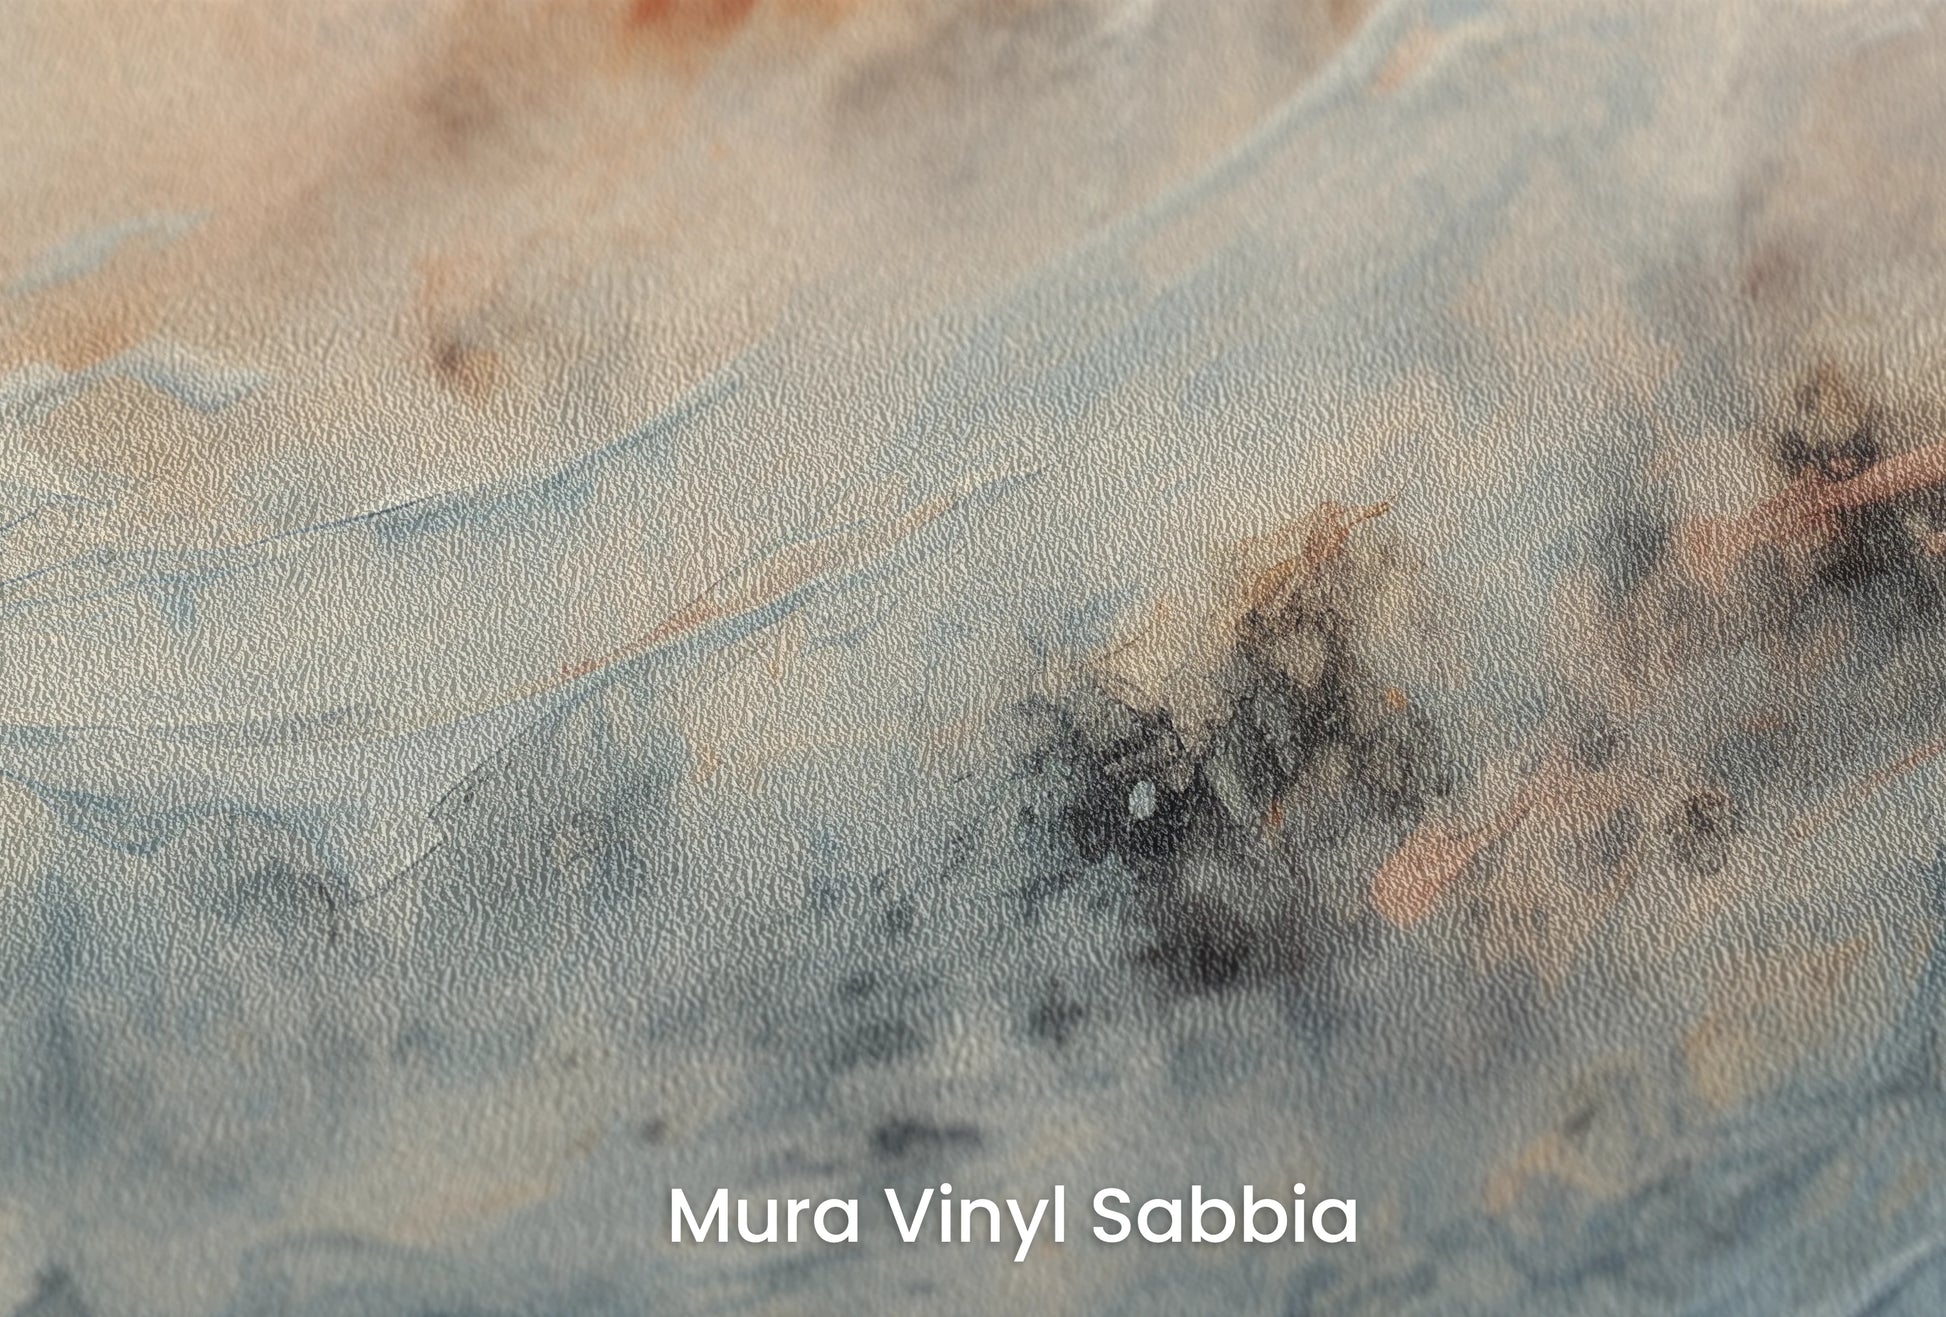 Zbliżenie na artystyczną fototapetę o nazwie Moon's Tranquility na podłożu Mura Vinyl Sabbia struktura grubego ziarna piasku.